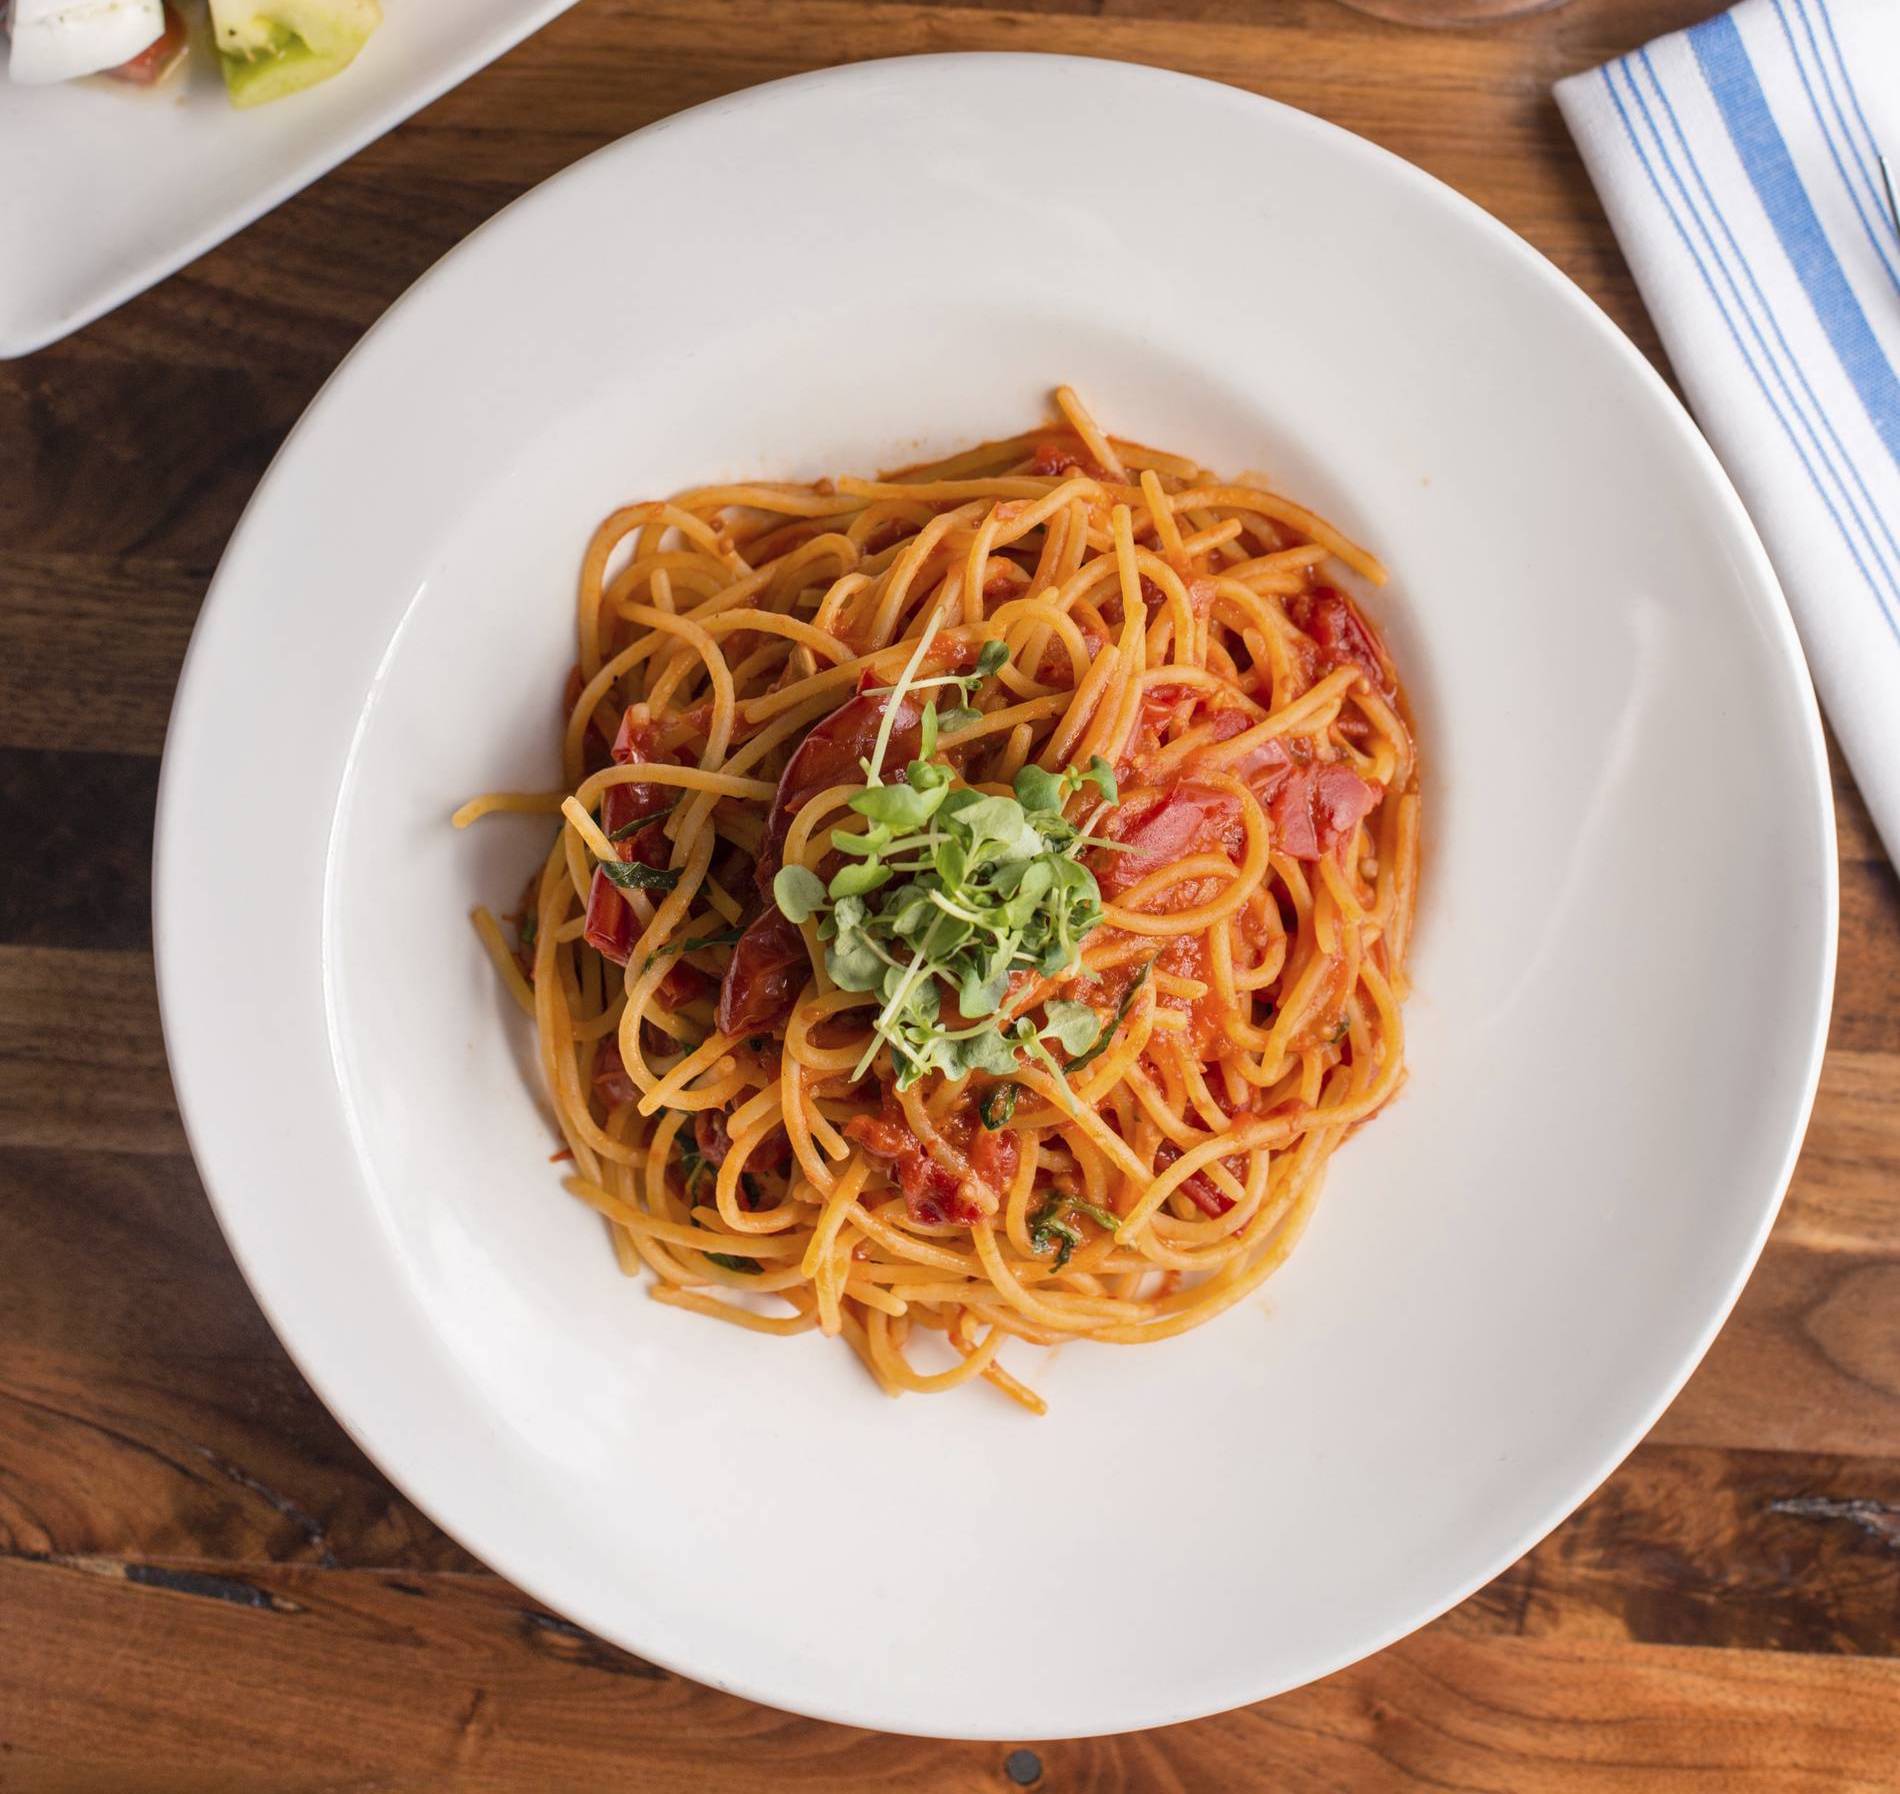 Spaghetti Pomodoro dish at Angelina's